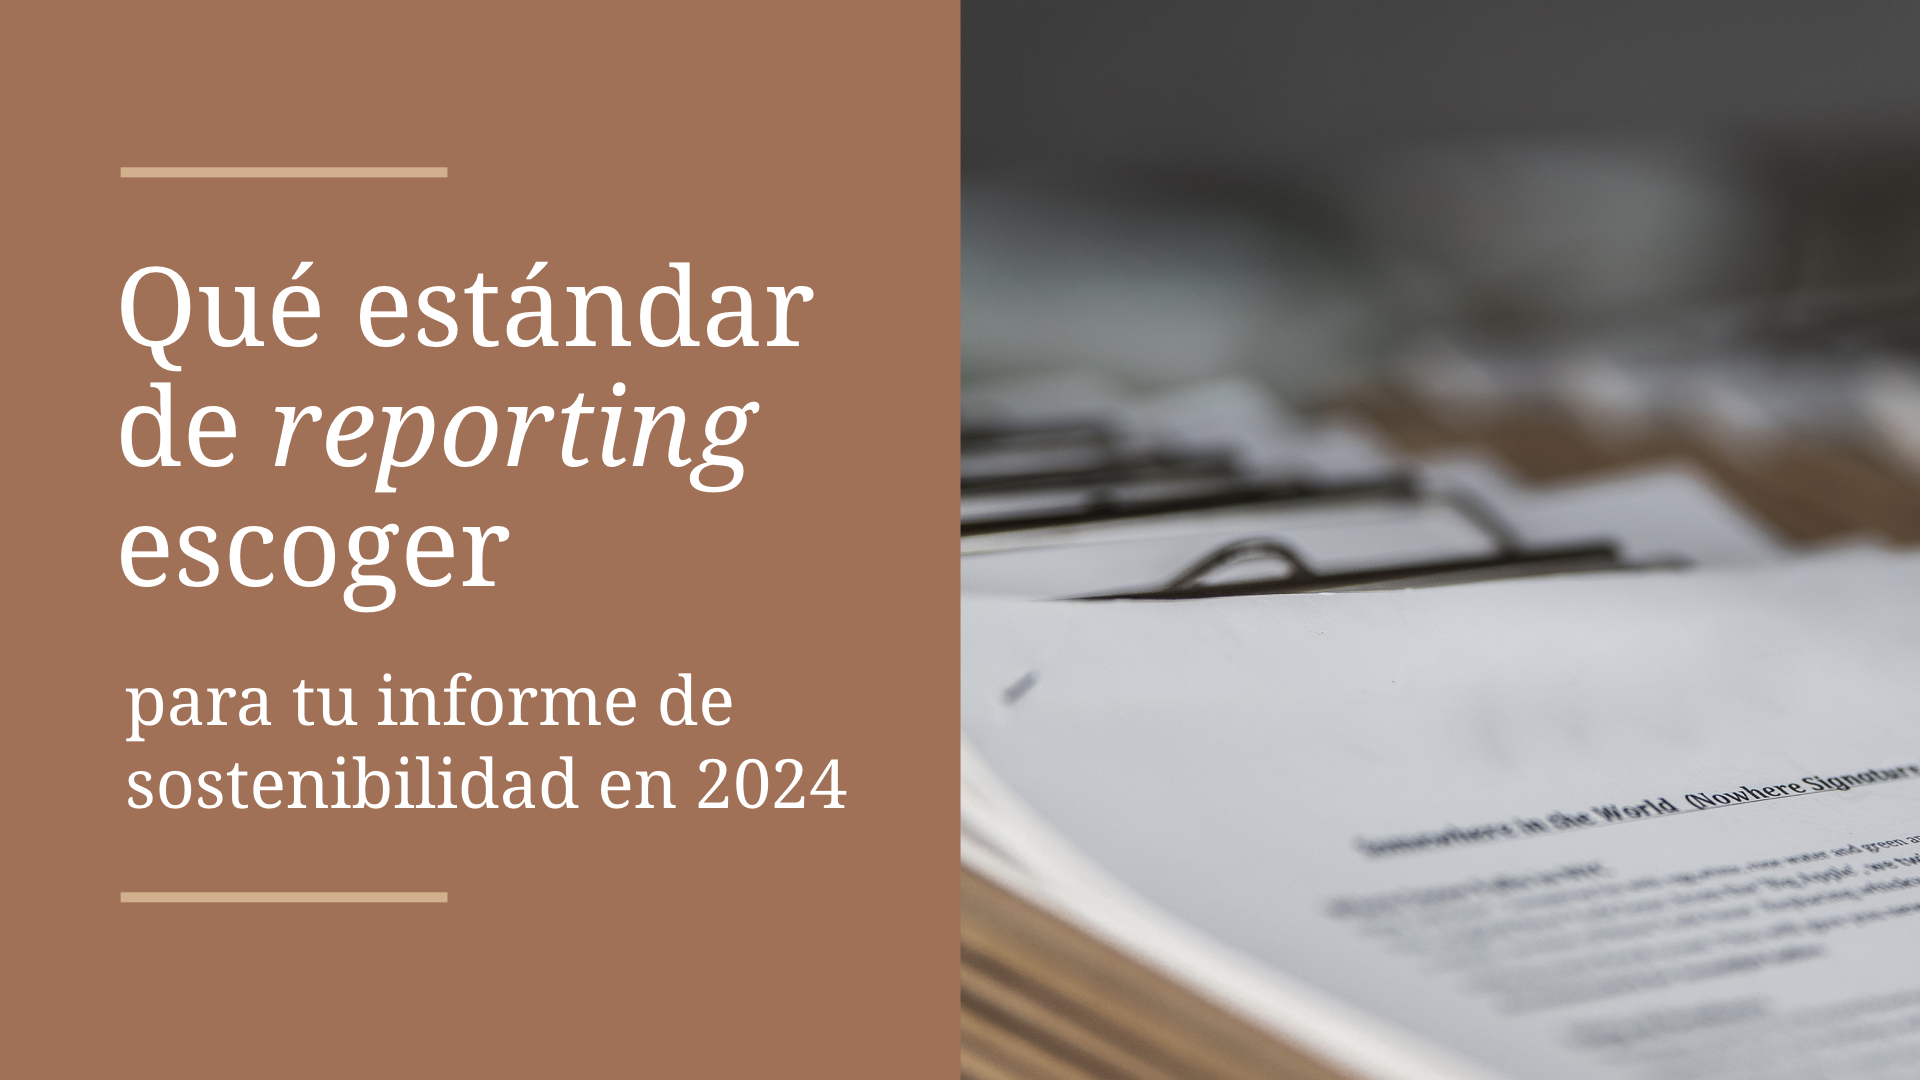 Qué estándar de reporting escoger para tu informe ESG en 2024